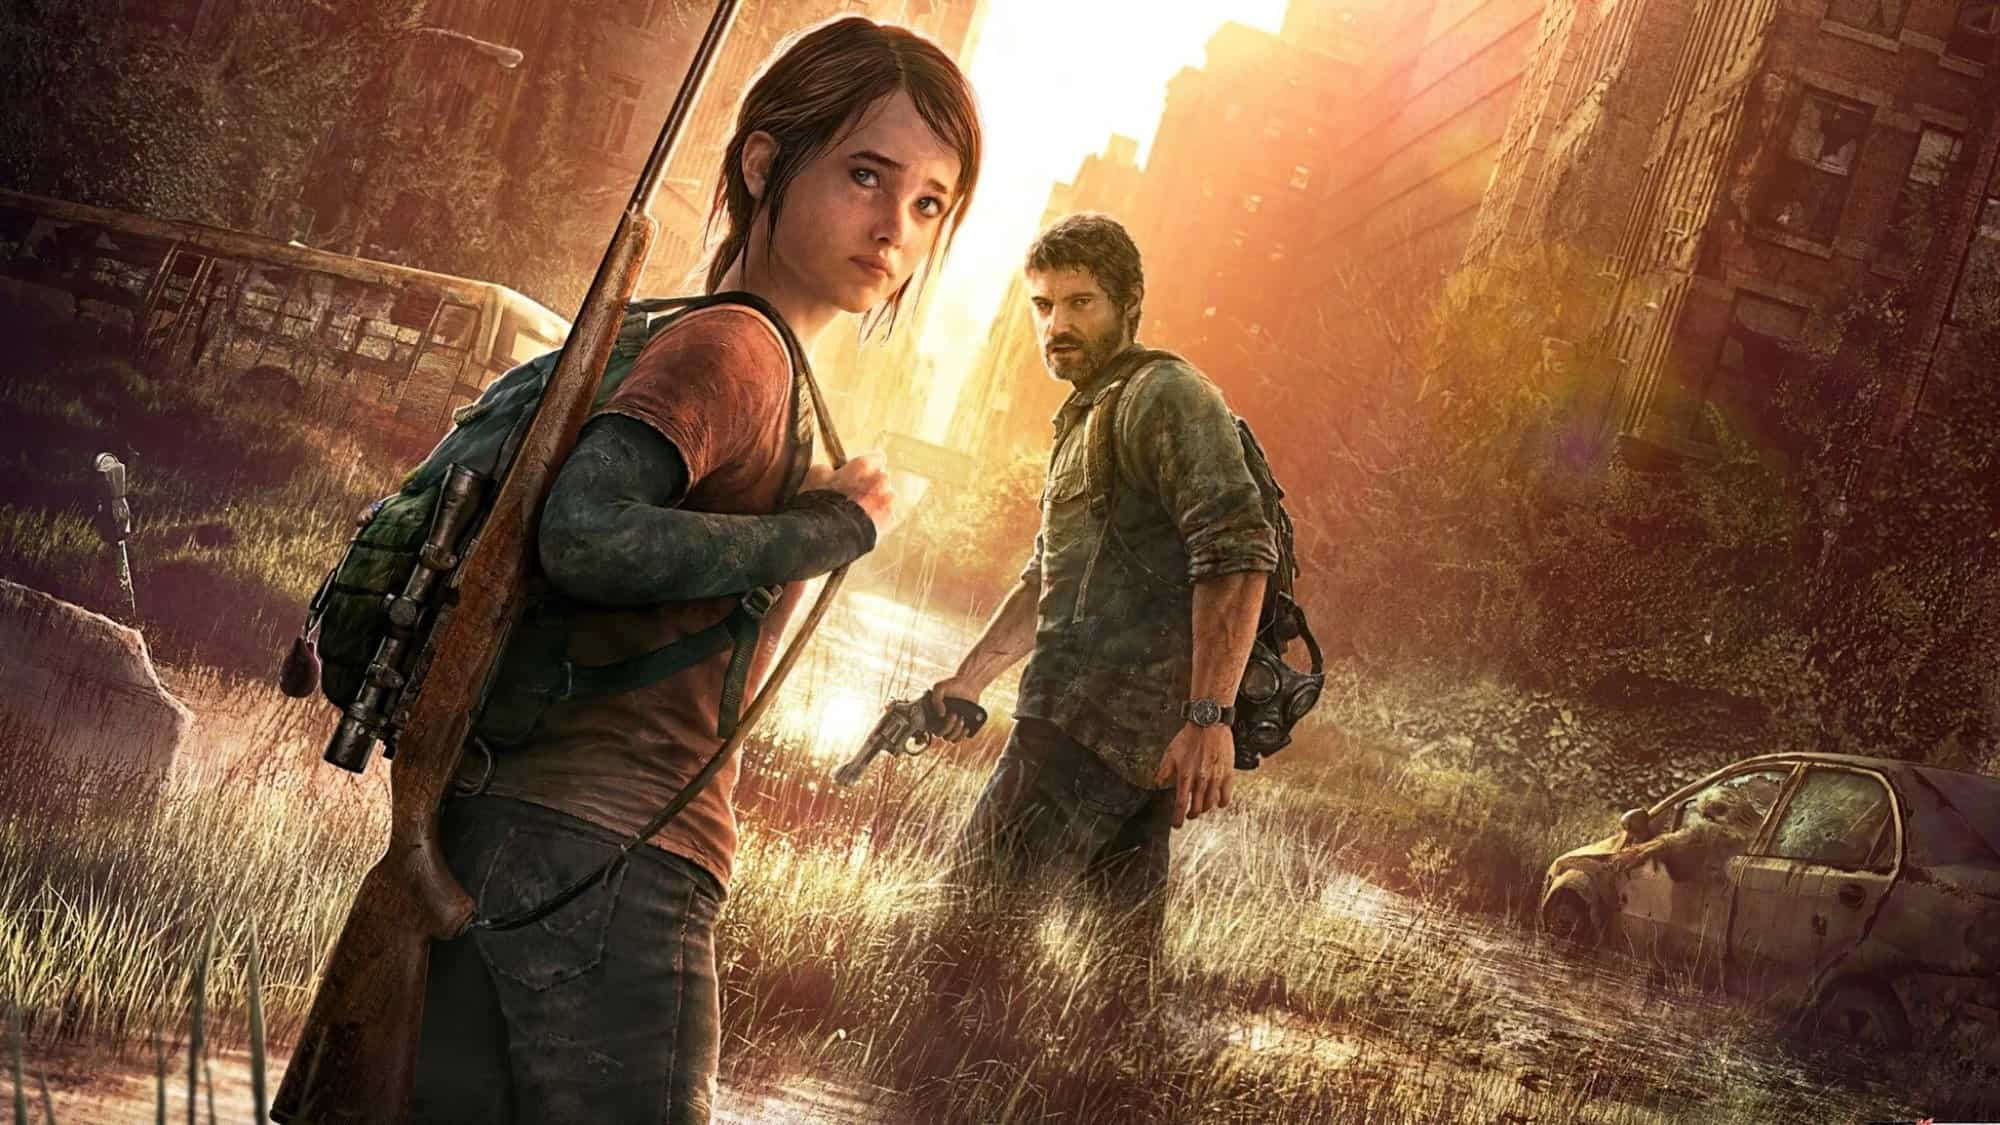 Série de 'The Last of Us' será baseada no primeiro jogo